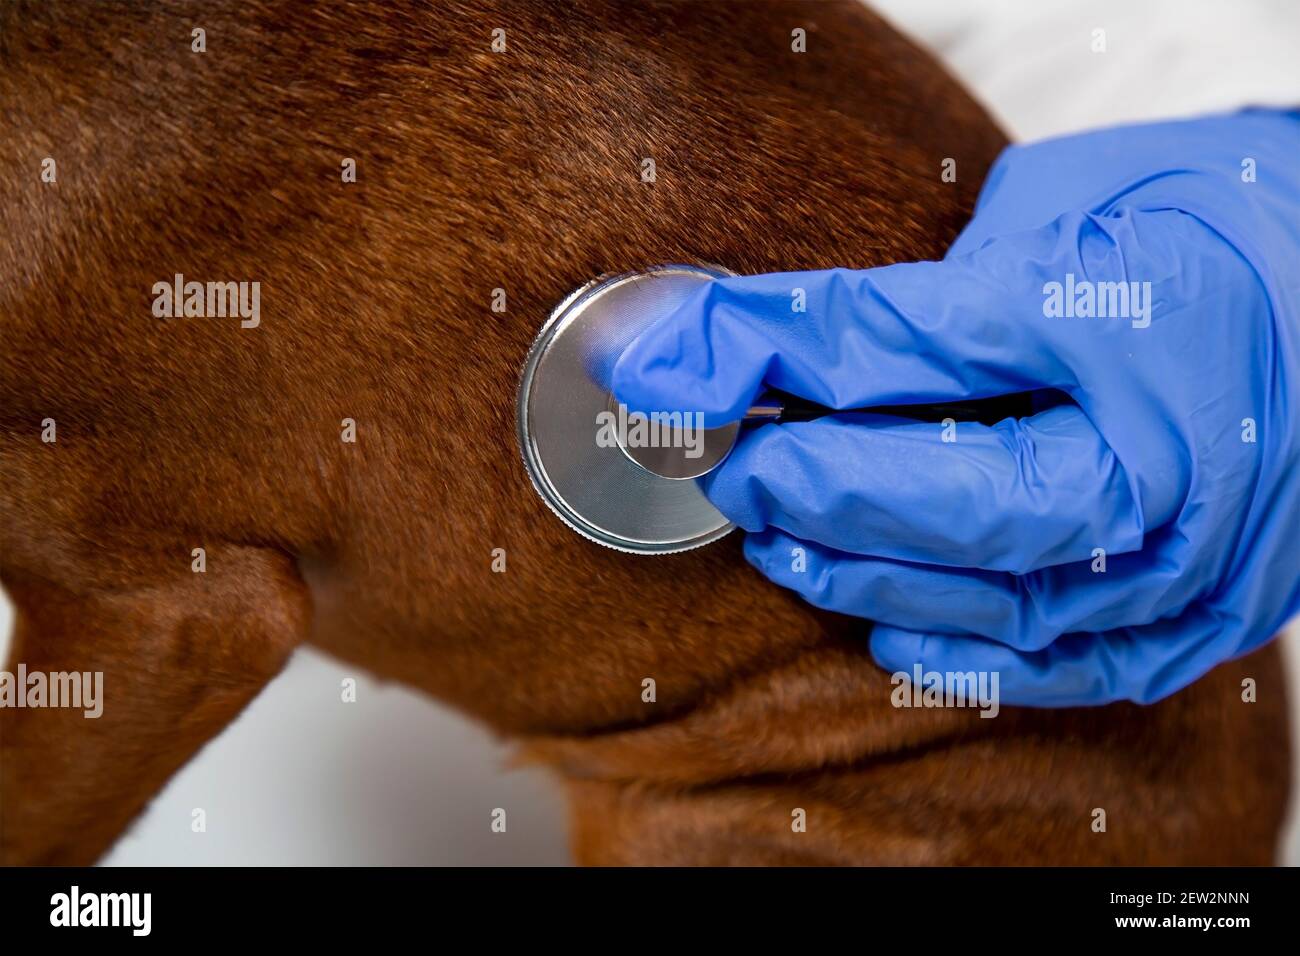 Eine tierärztliche Hand in einem medizinischen Handschuh prüft das Tier mit einem Stethoskop. Stockfoto